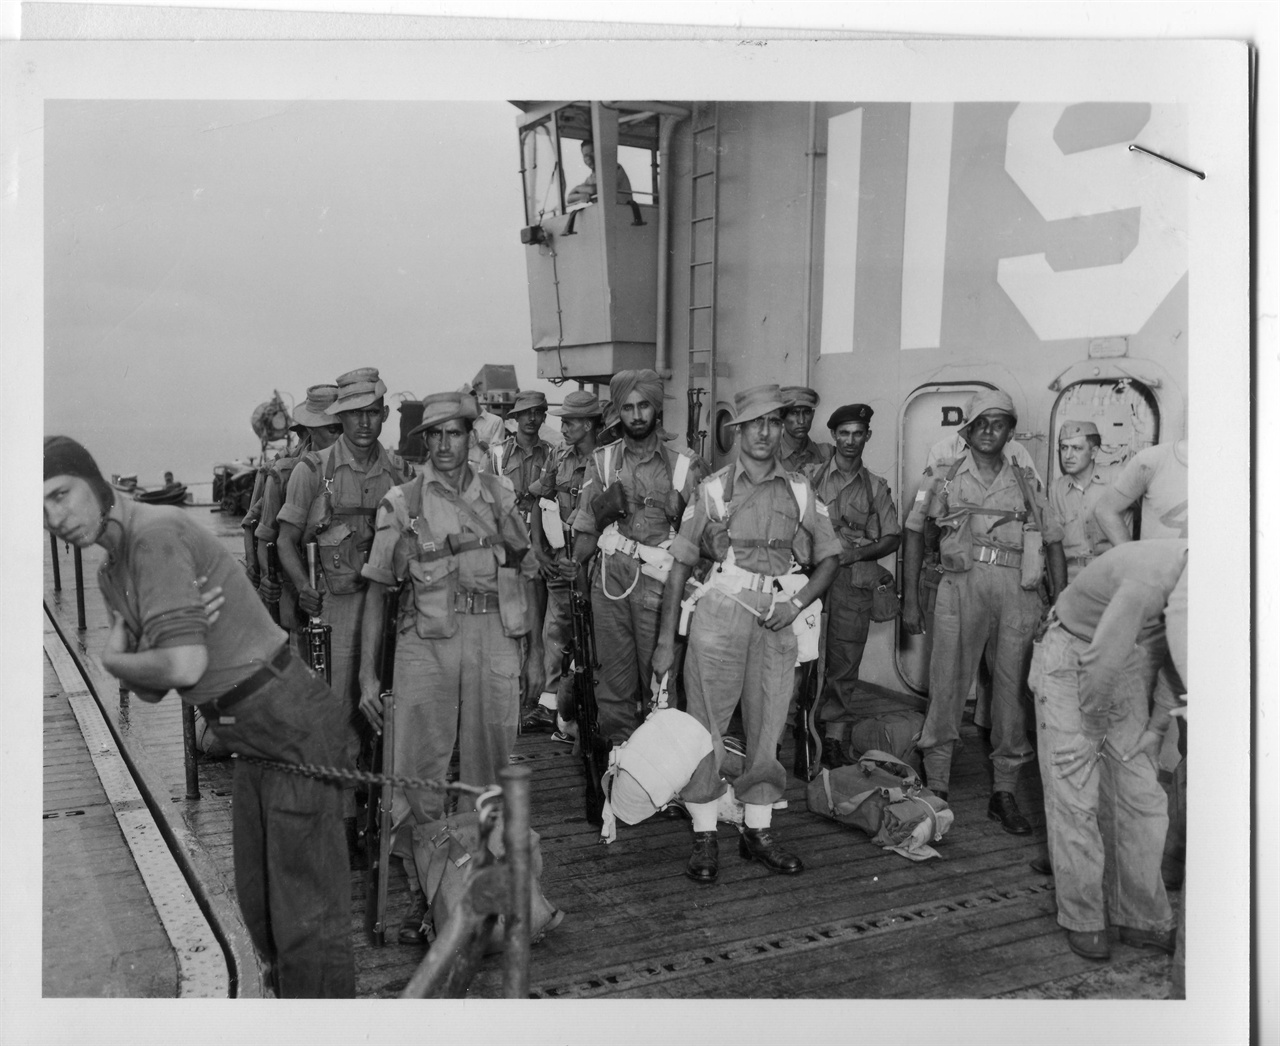 1953. 9. 3. 정전협정에 따라 유엔 중립국감시위원단으로 한국에 온 인도병사들이 배에서 내리고 있다.